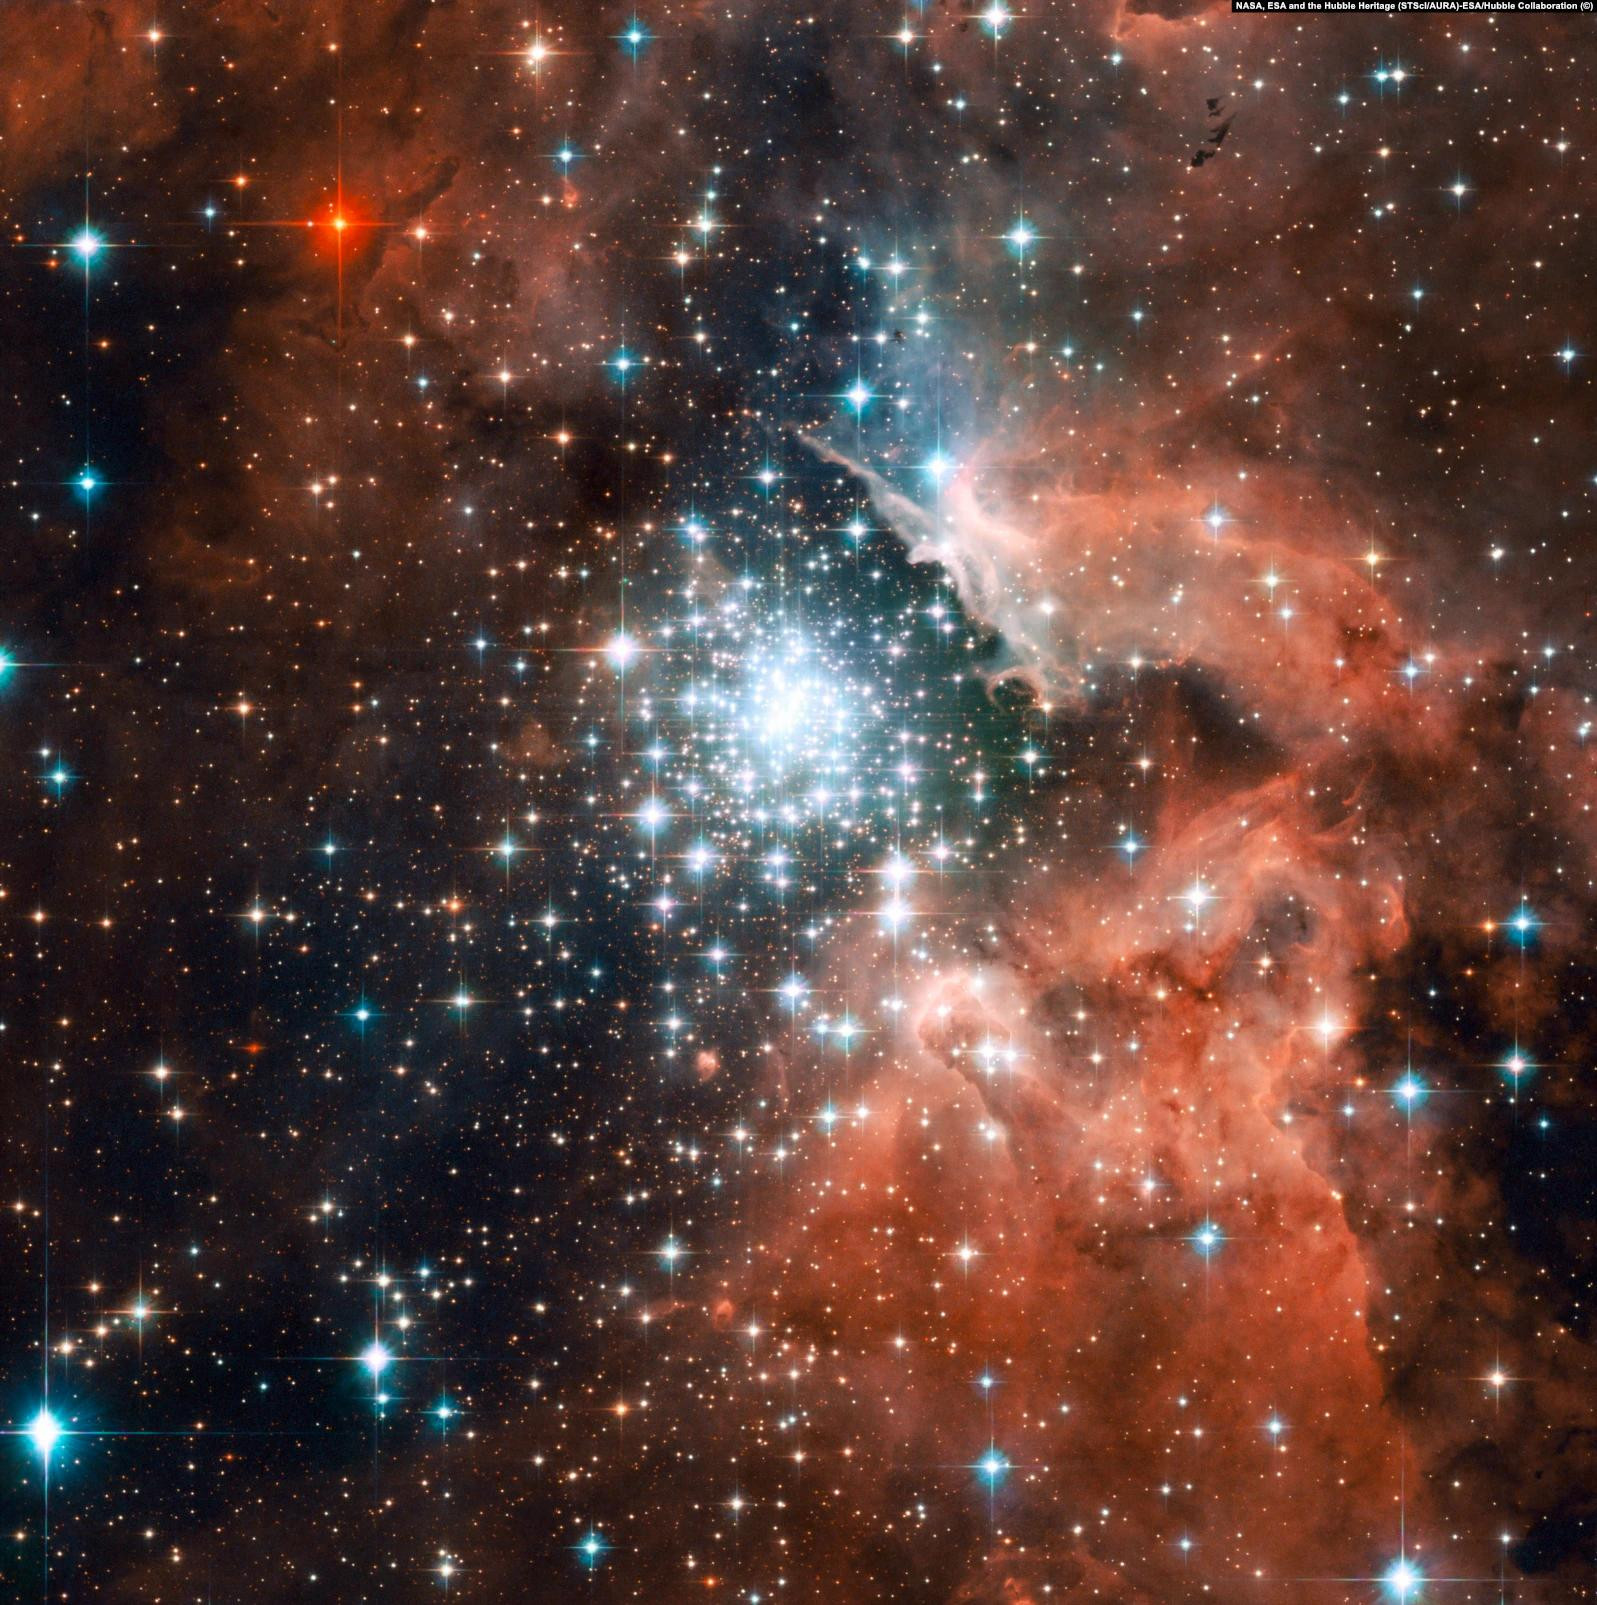 Рассеянное звездное скопление NGC 3603 в созвездии Киль, одна из крупнейших областей звездообразования в галактике Млечный путь. На фото четко различимы области межзвездного газа и пыли колоссальных размеров, окружающие регион с большой концентрацией массивных звезд (в центре снимка) 